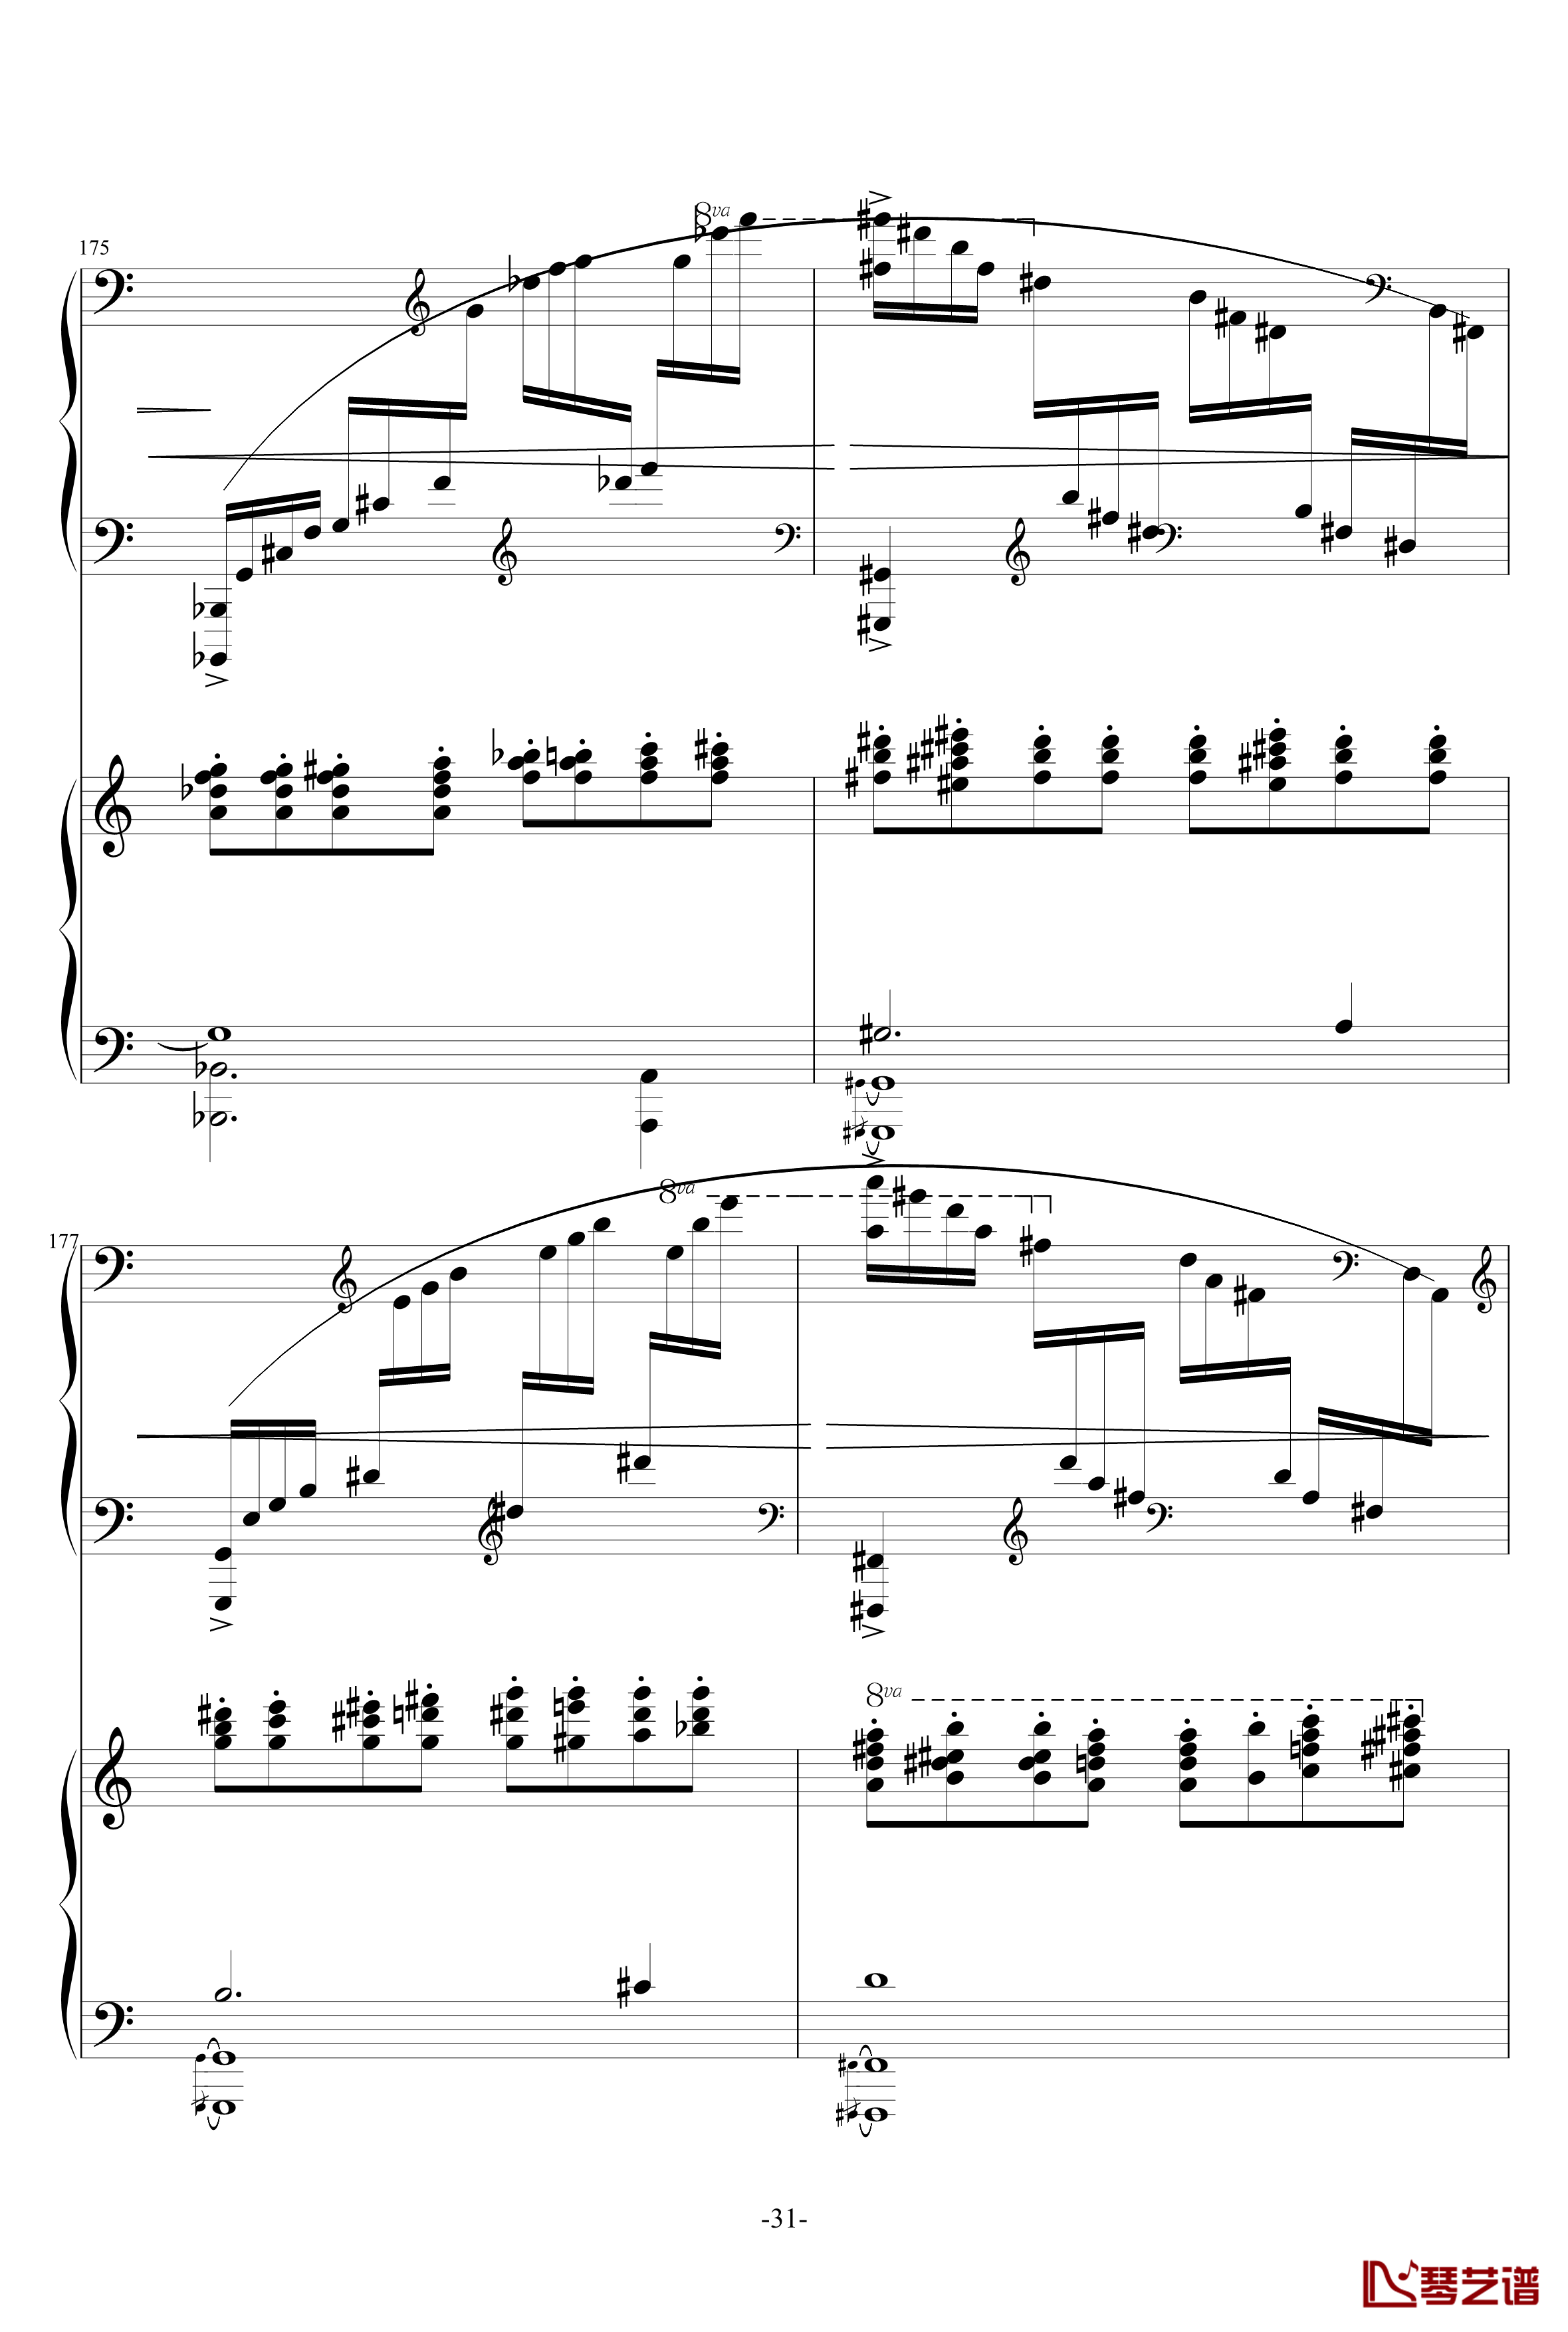 普罗科菲耶夫第三钢琴协奏曲第二乐章钢琴谱31